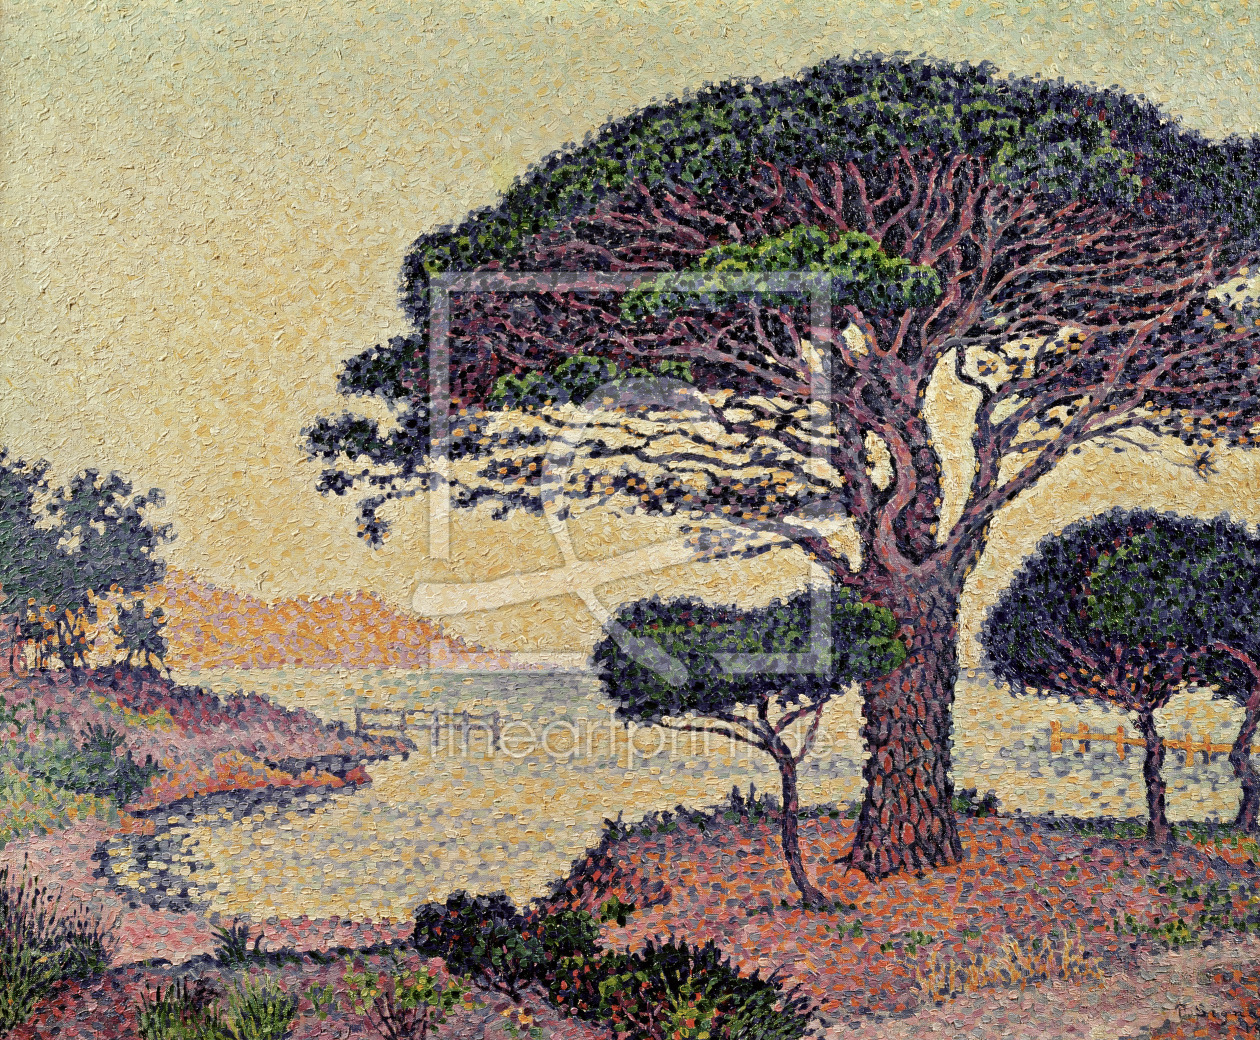 Bild-Nr.: 31002539 Umbrella Pines at Caroubiers, 1898 erstellt von Signac, Paul